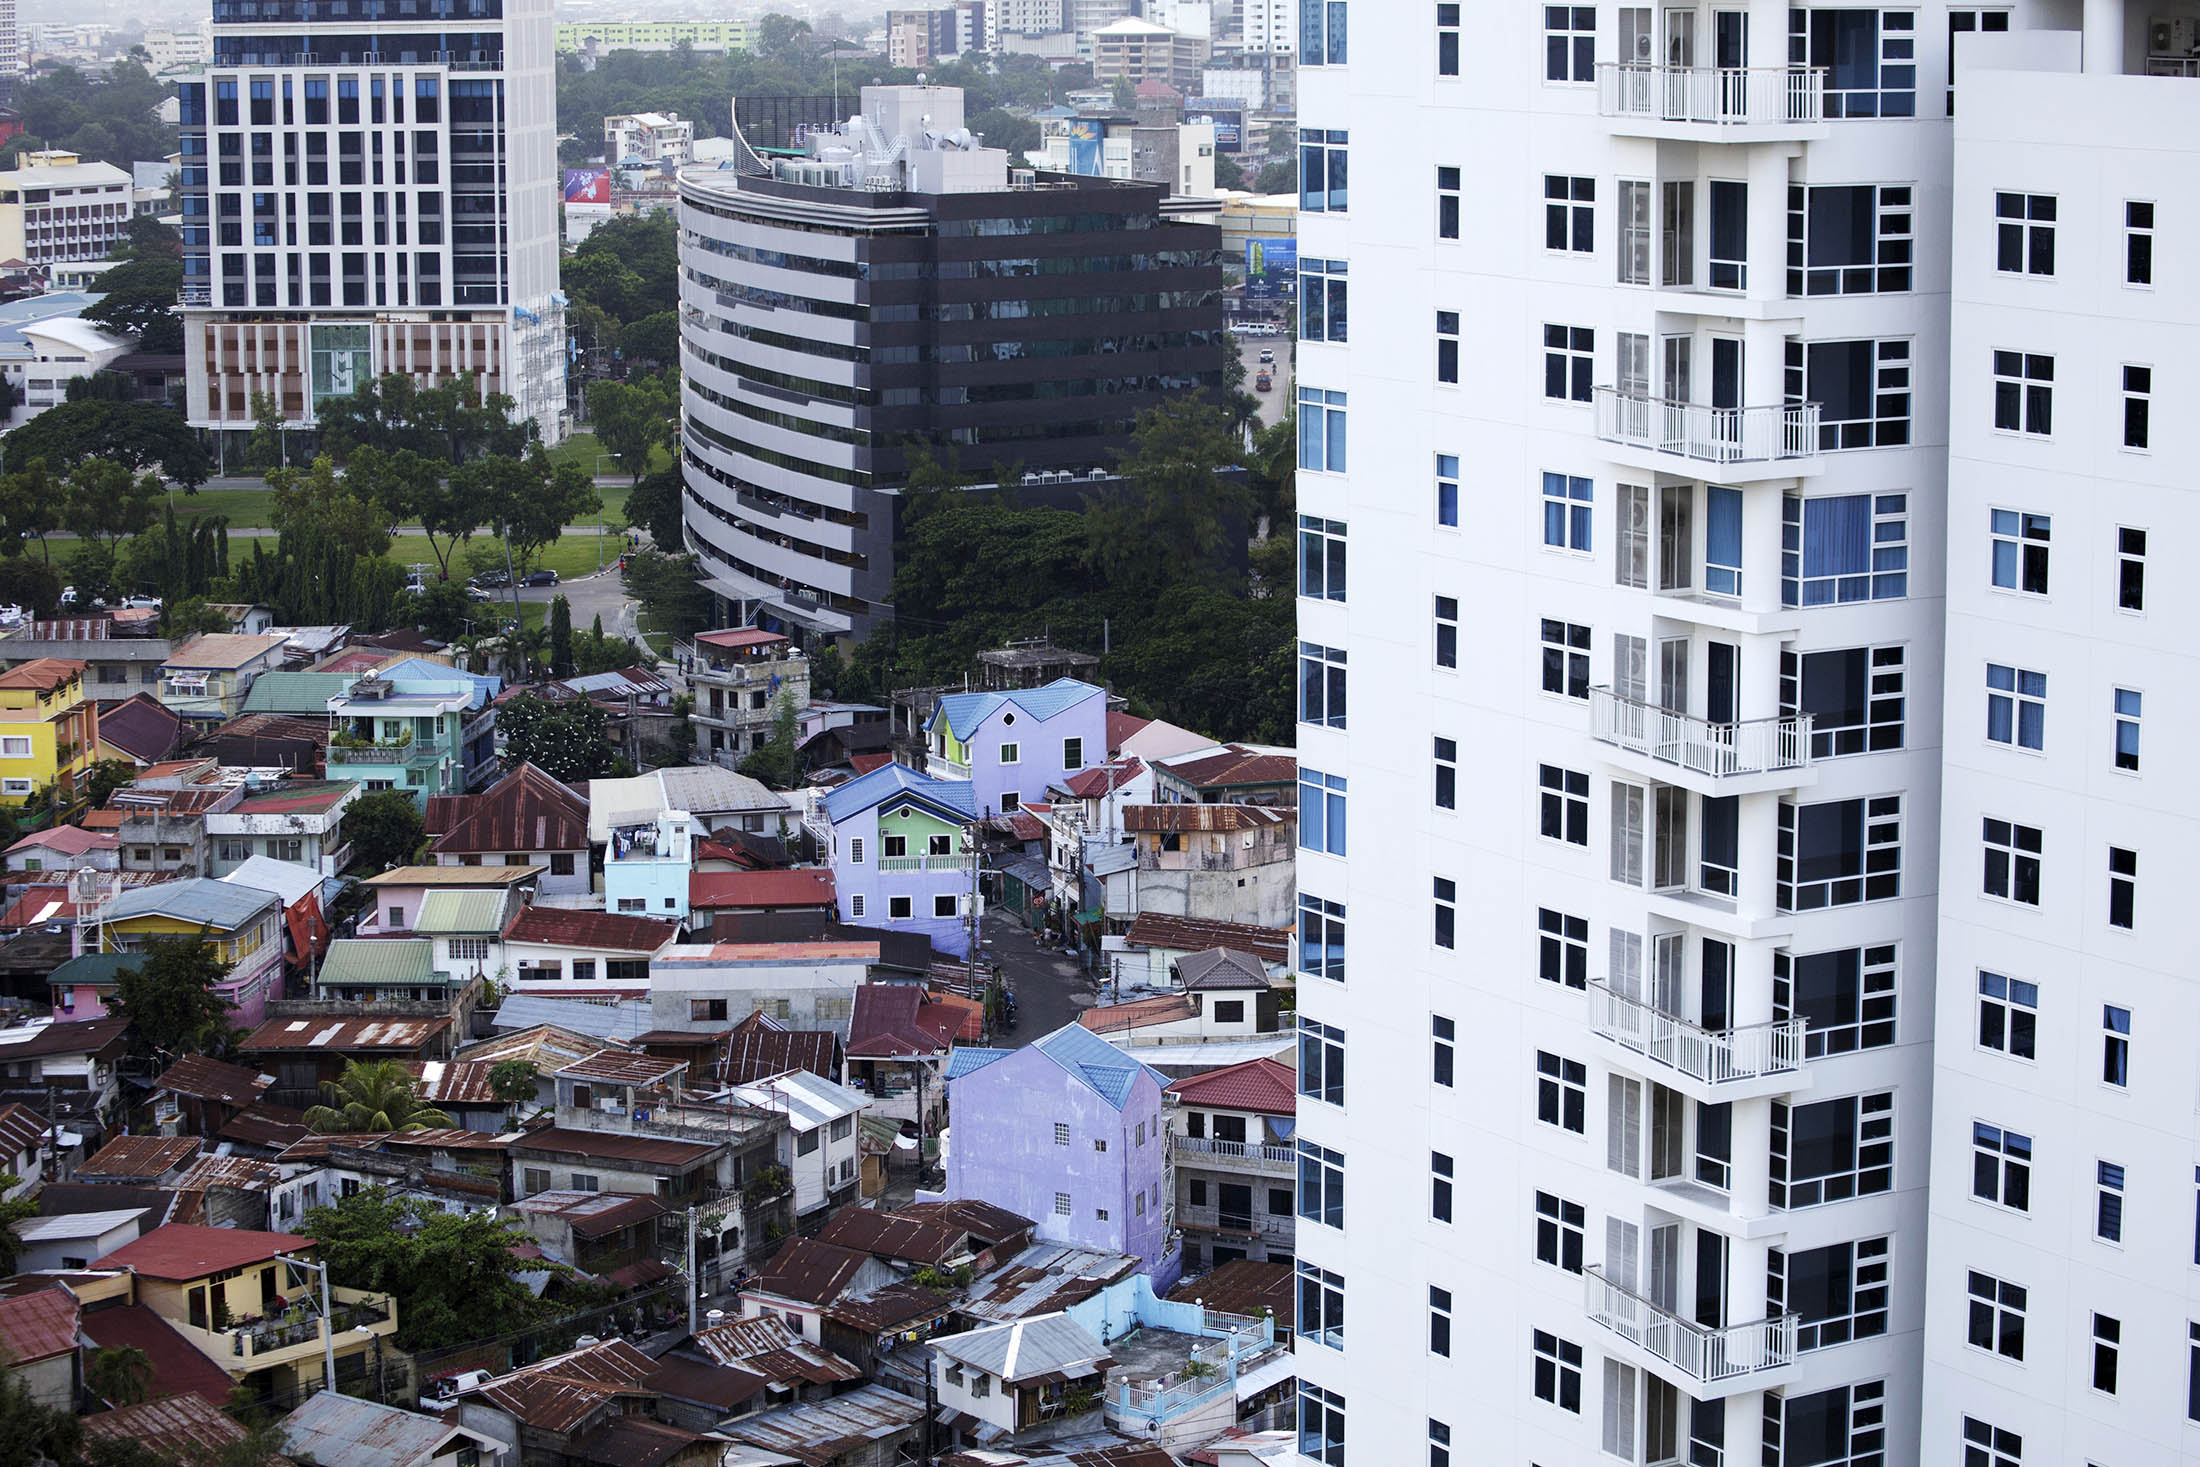 Một khu nhà ổ chuột bên cạnh cao ốc ở Cebu, Philippines - ảnh: Kuni Takahashi/Bloomberg